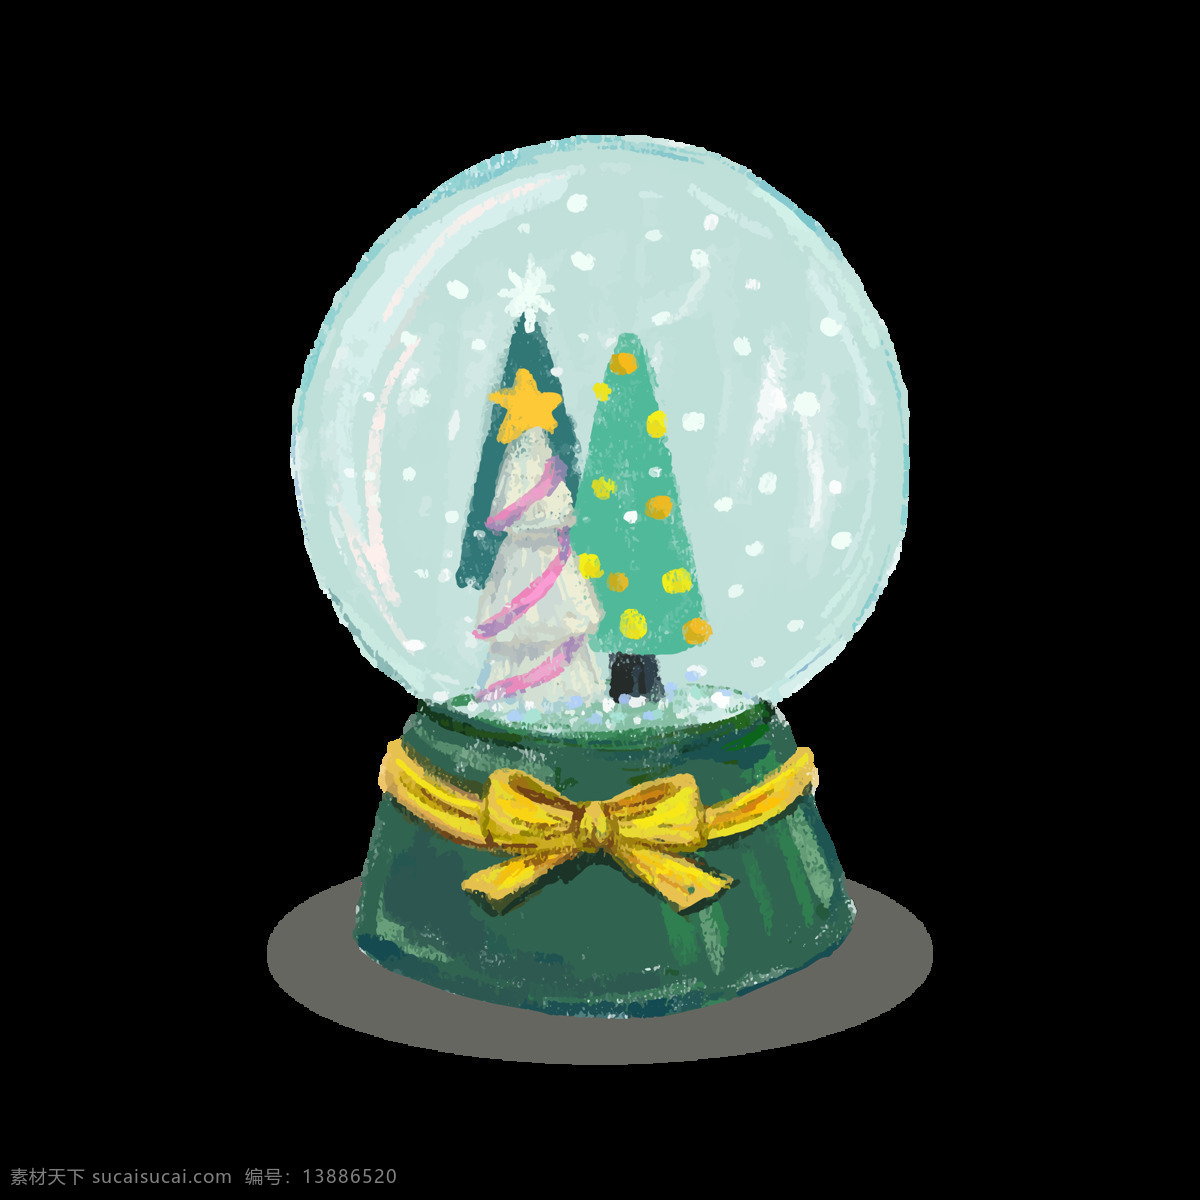 圣诞 水晶球 元素 png元素 蝴蝶结 礼物 免抠元素 漂亮 飘雪 透明素材